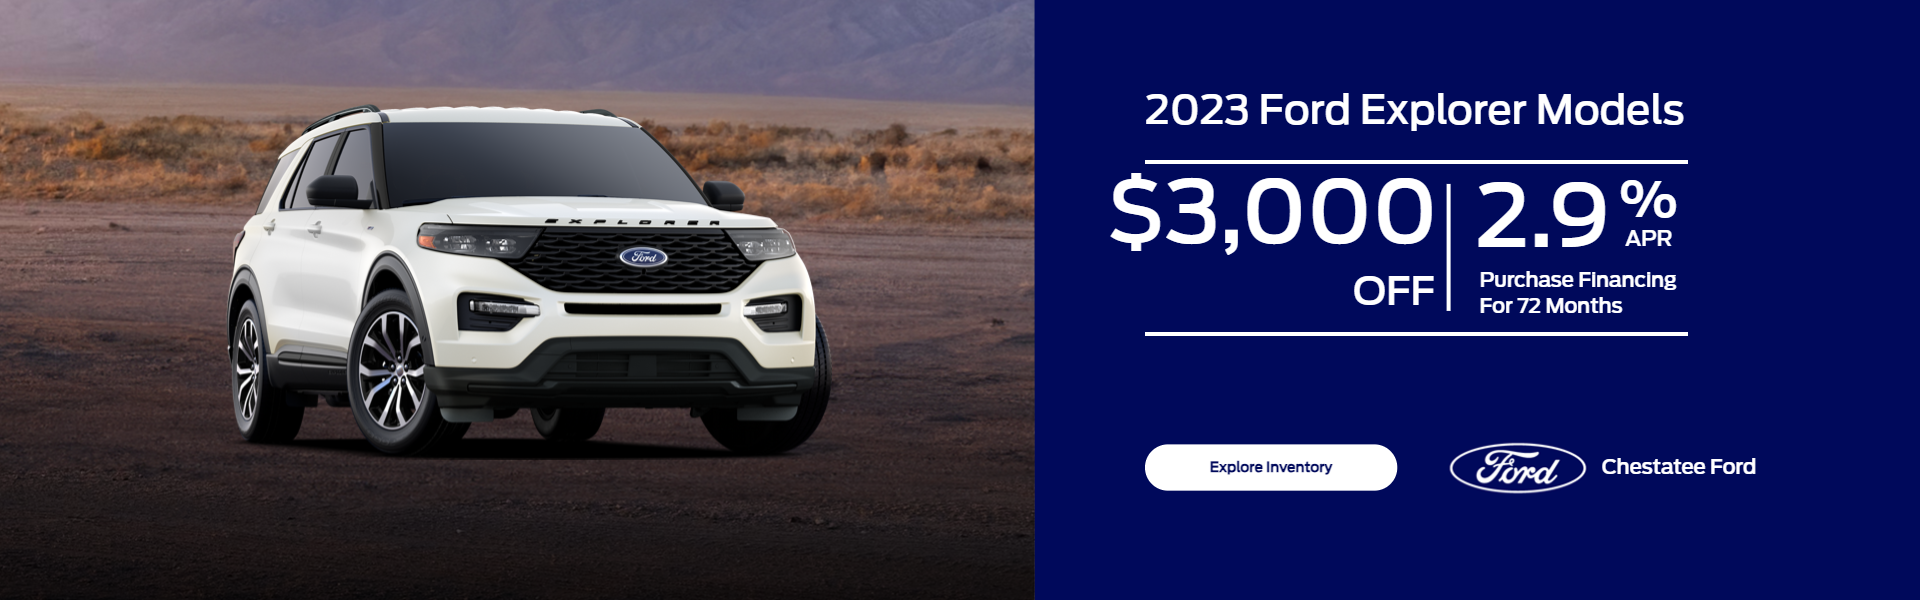 2023 Ford Explorer Deals